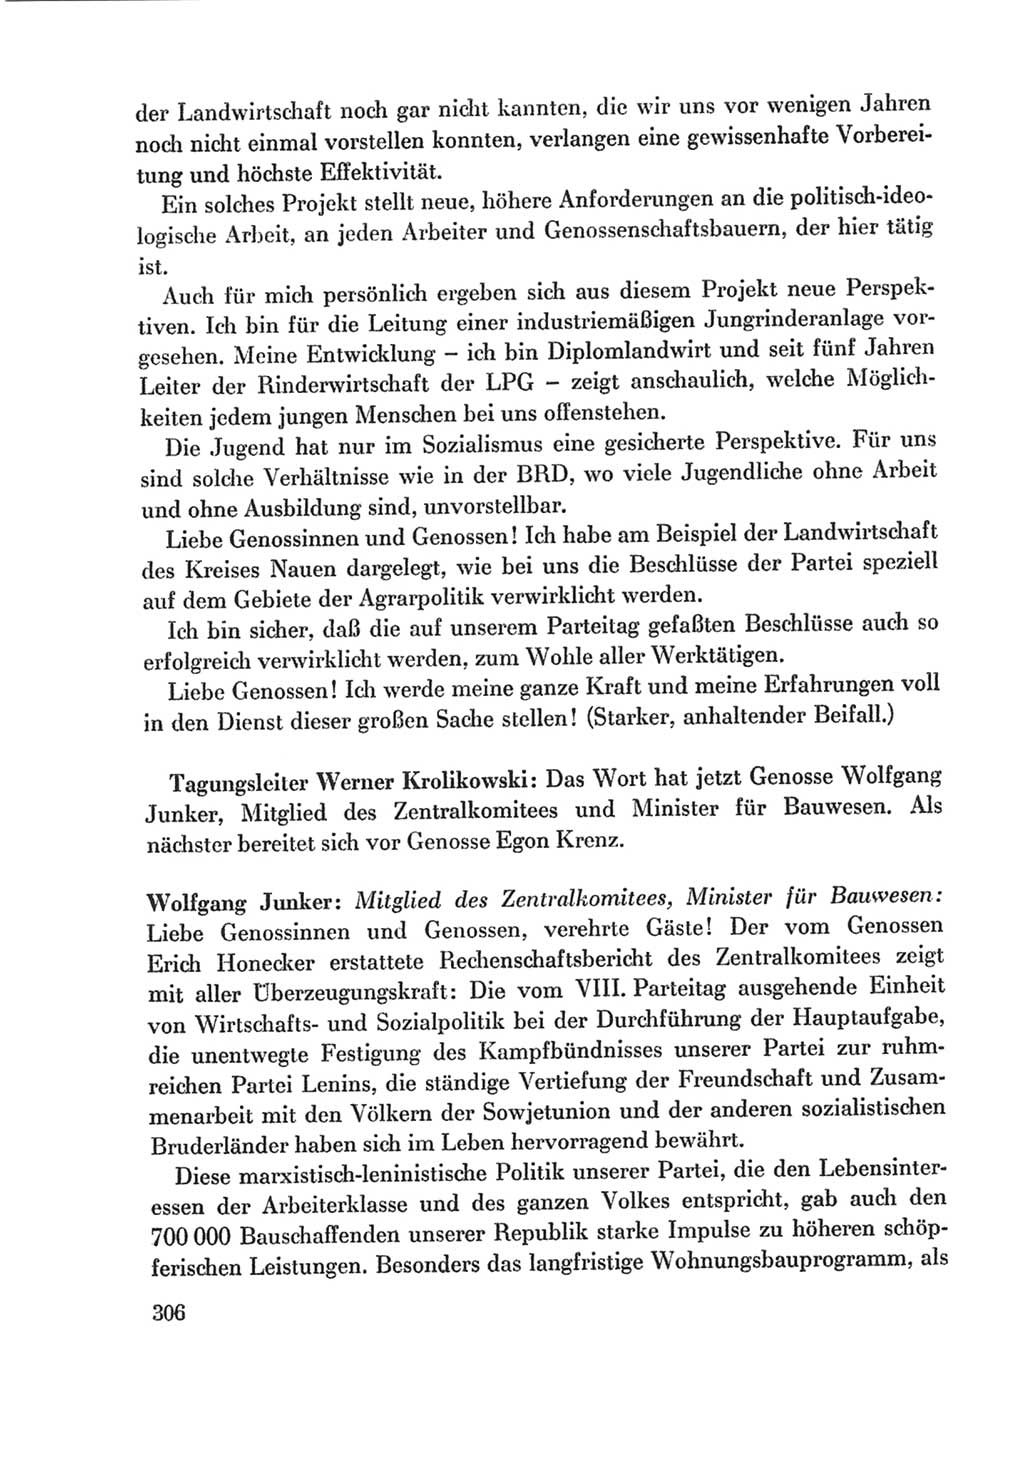 Protokoll der Verhandlungen des Ⅸ. Parteitages der Sozialistischen Einheitspartei Deutschlands (SED) [Deutsche Demokratische Republik (DDR)] 1976, Band 1, Seite 306 (Prot. Verh. Ⅸ. PT SED DDR 1976, Bd. 1, S. 306)